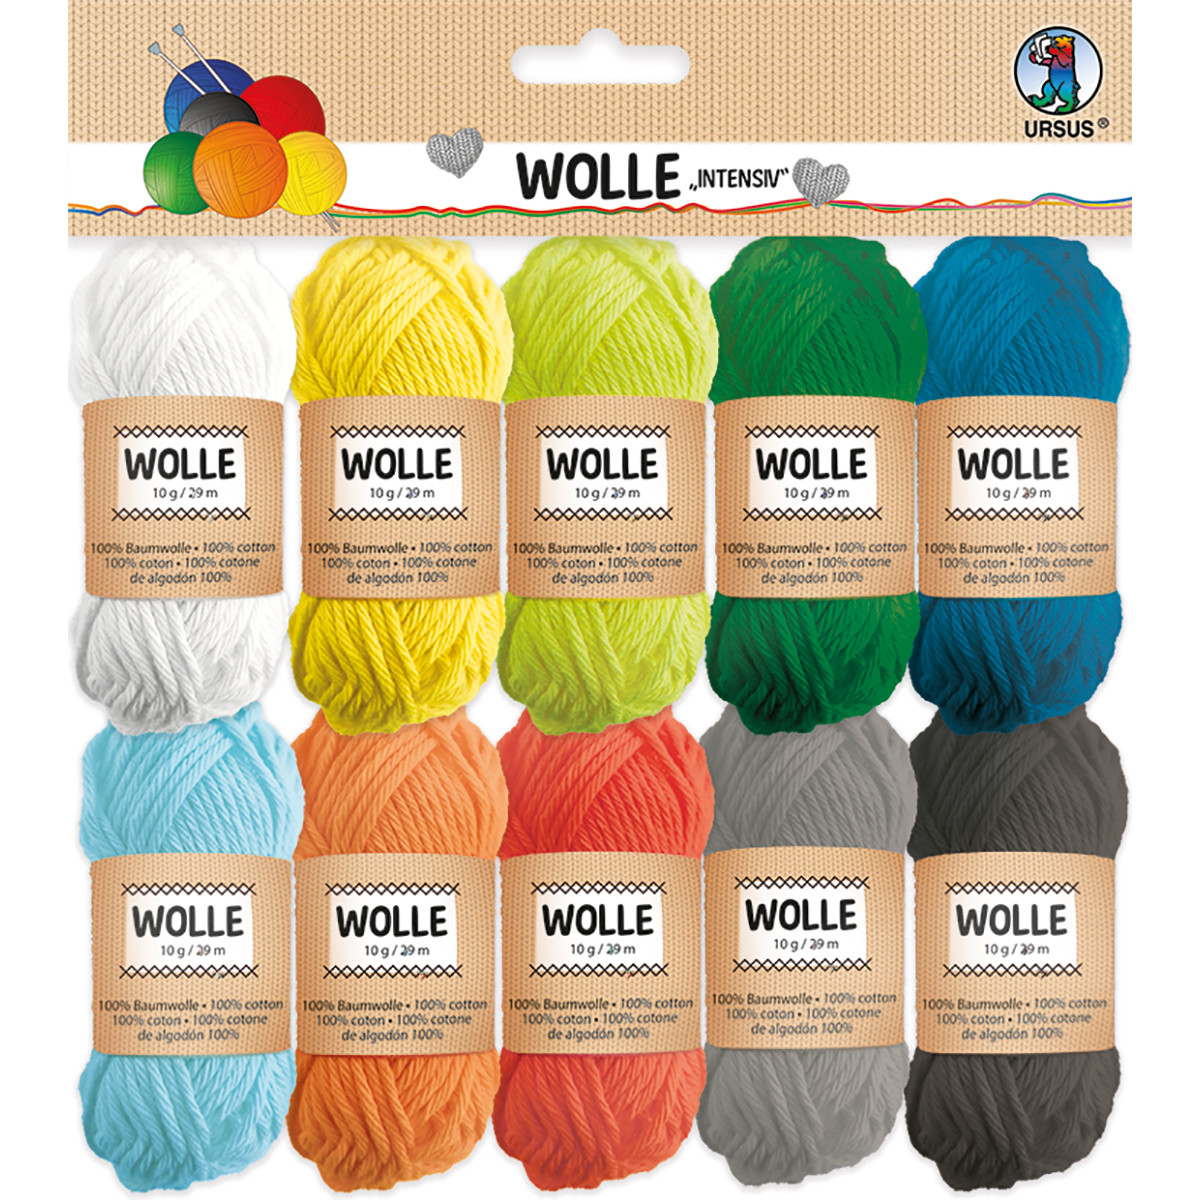 Wolle intensiv, aus 100% Baumwolle, Knäuel á 10 g / 29 m, in 10 Farben